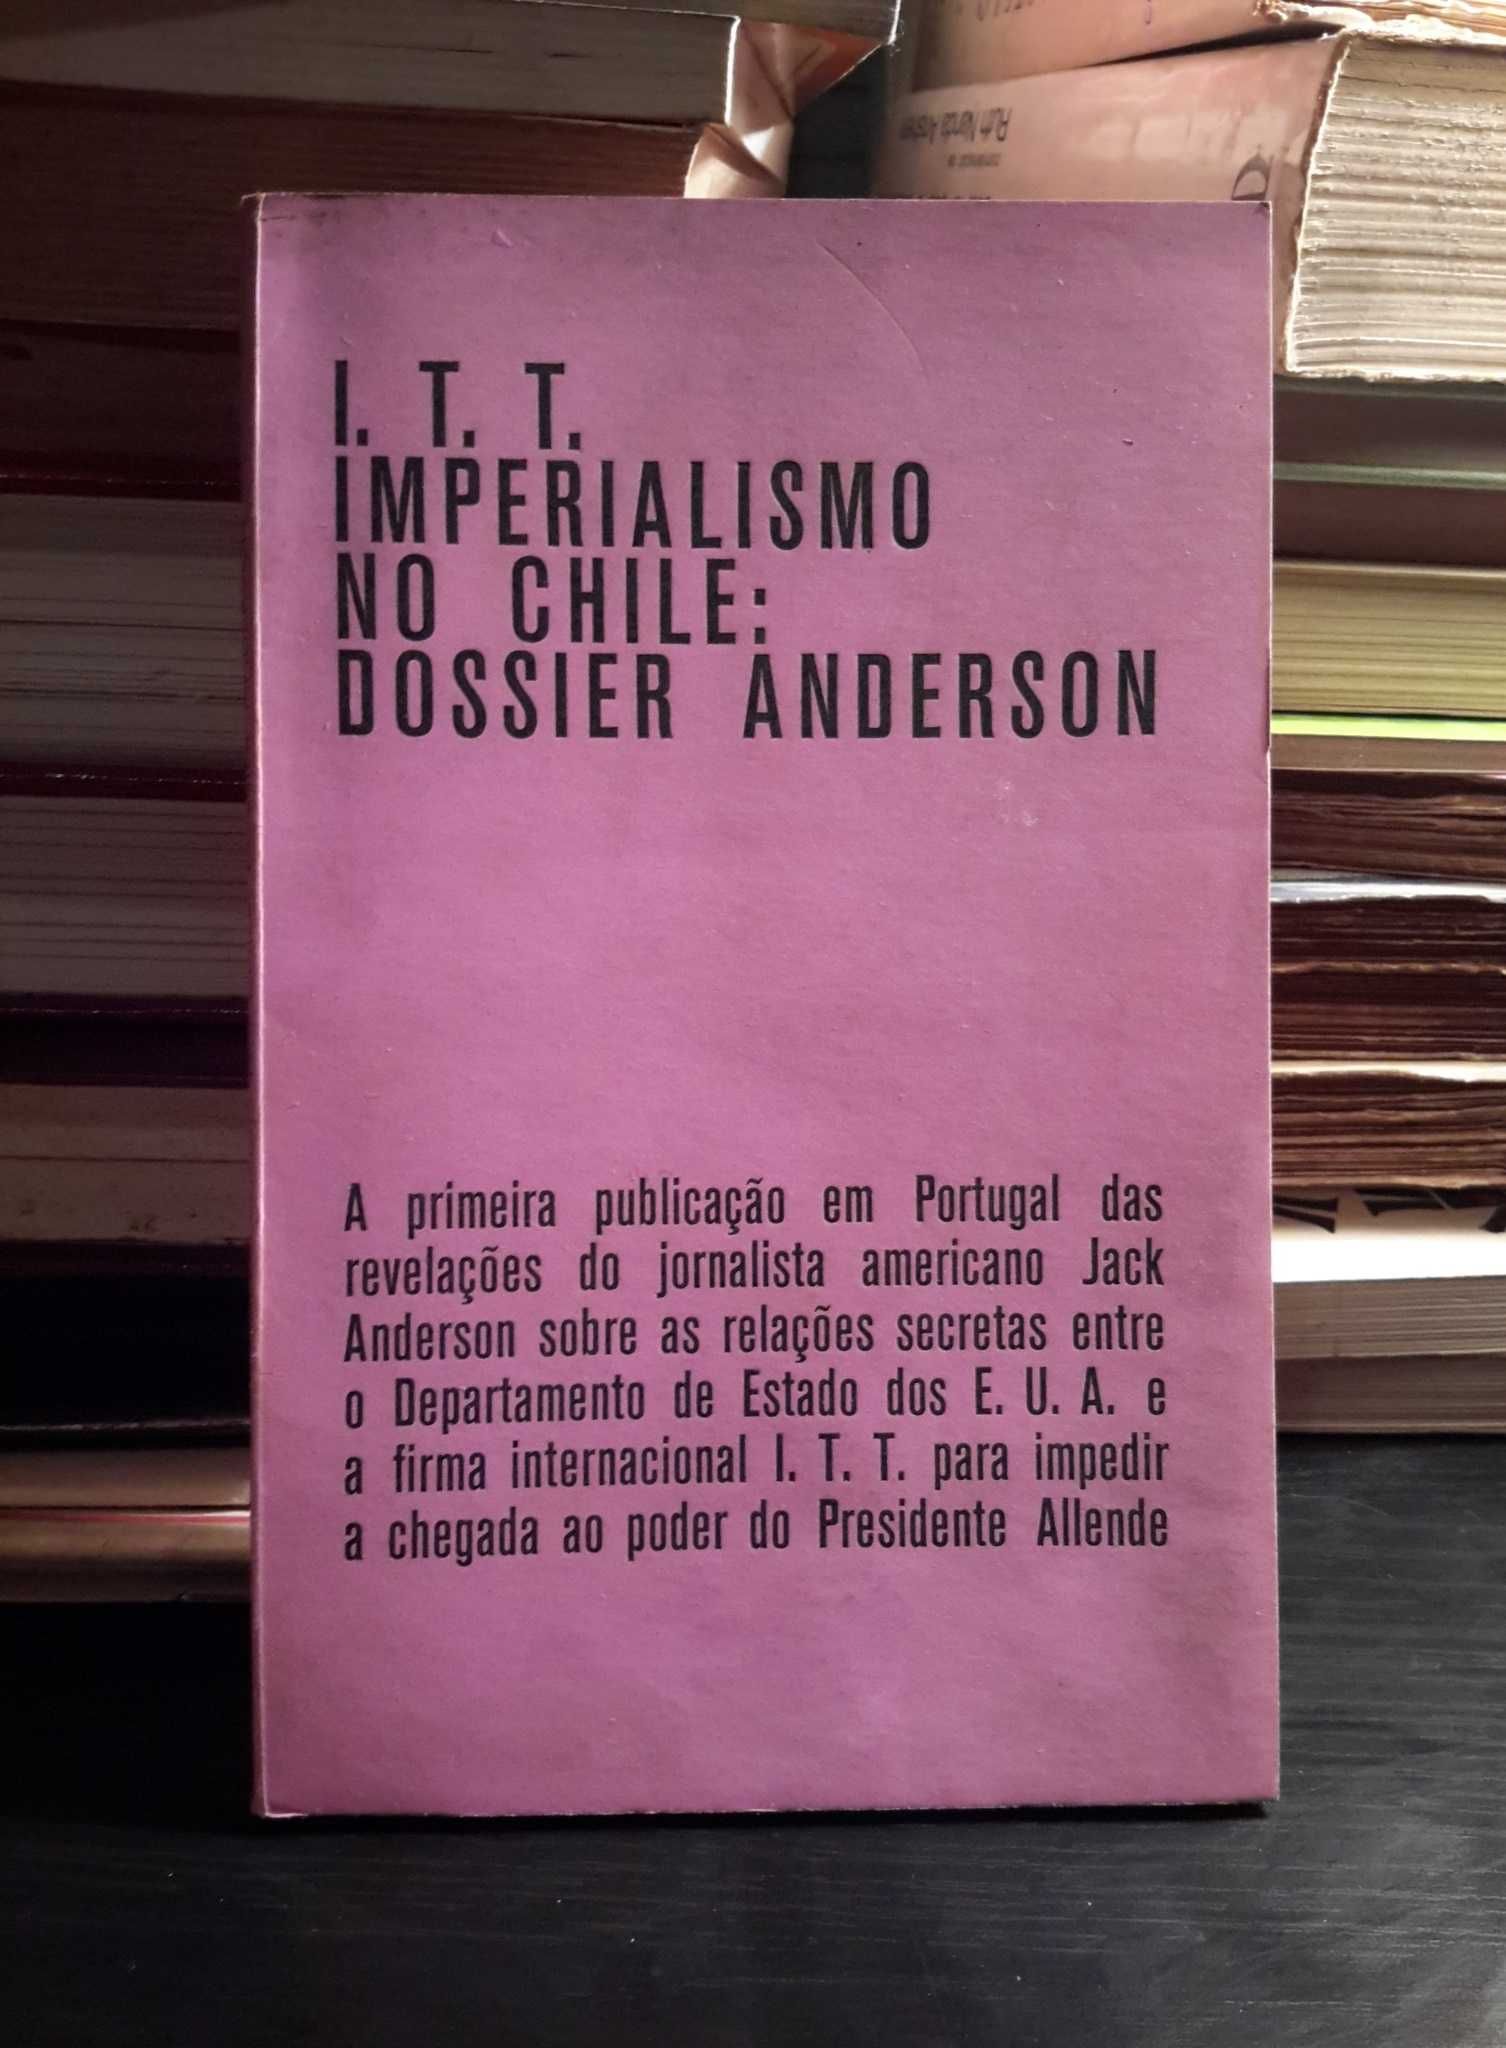 I. T. T. - Imperialismo no Chile: Dossier Anderson